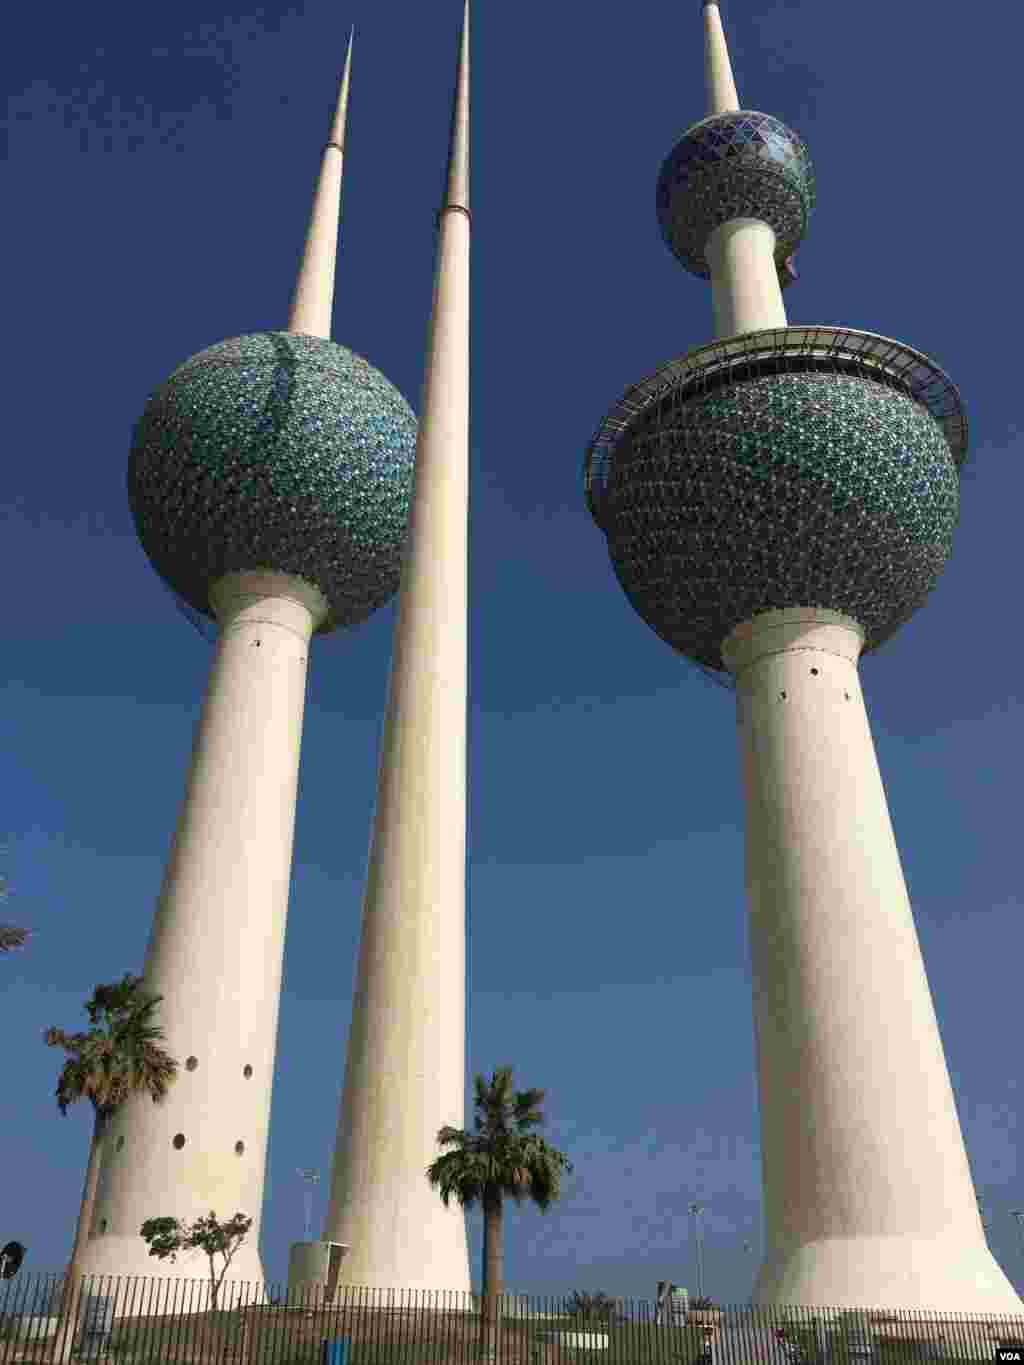 نمایی از برجهای شهر کویت. این سه برج بلند و باریک در سال ۱۹۷۷ ساخته شدند و در بالای دو برج آن رستوران و سالن پذیرایی قرار دارد.